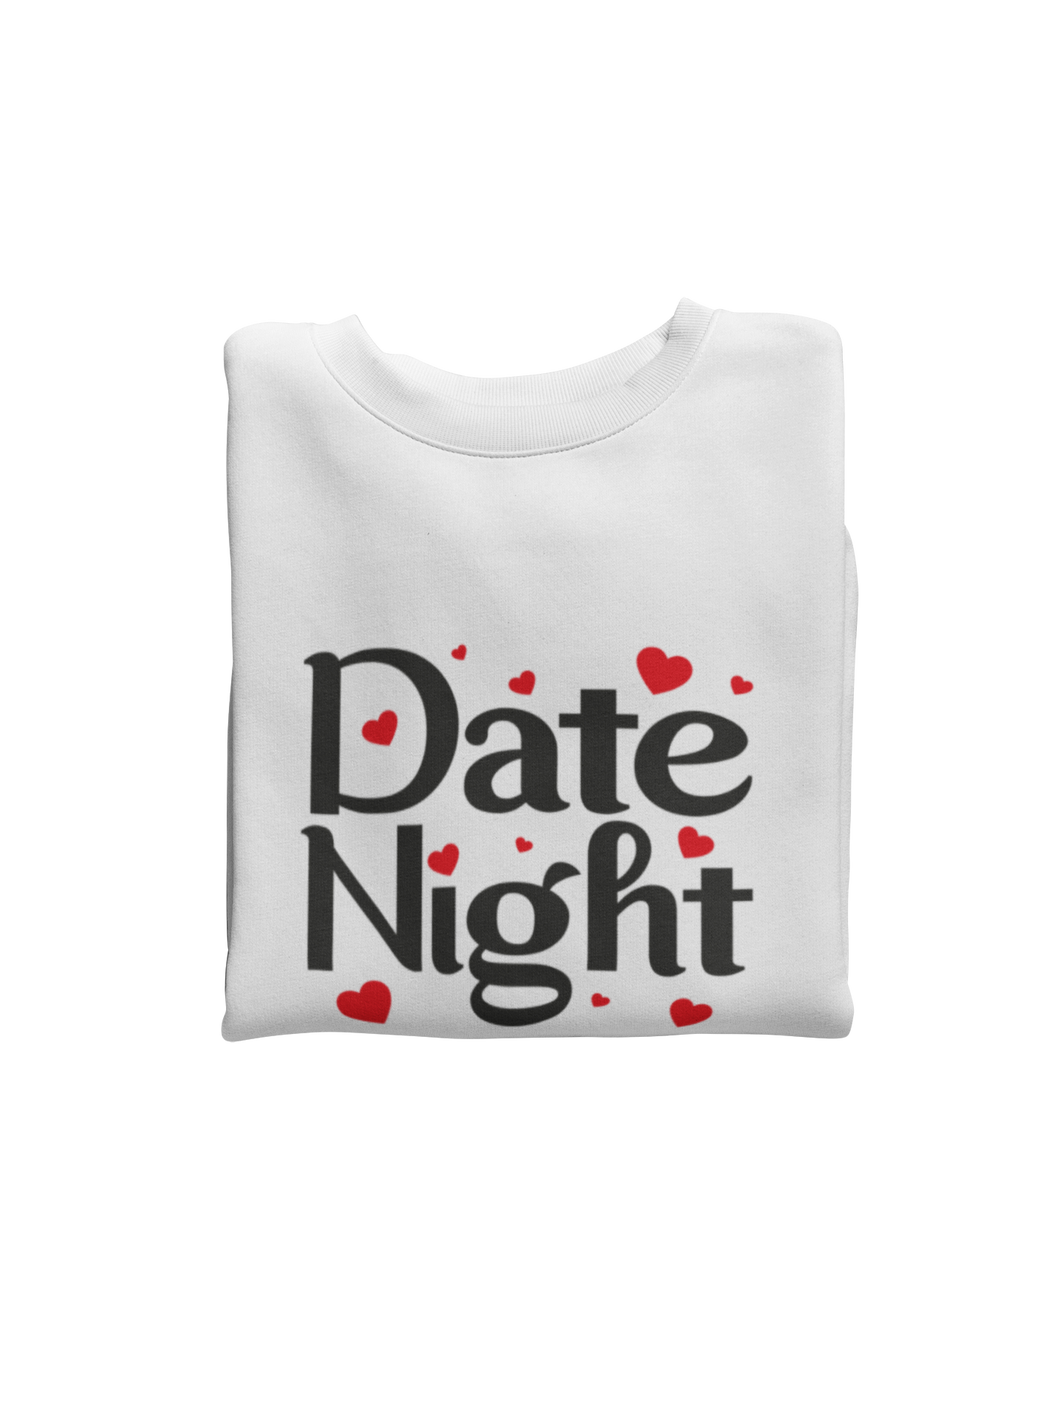 Date Night Sweatshirt